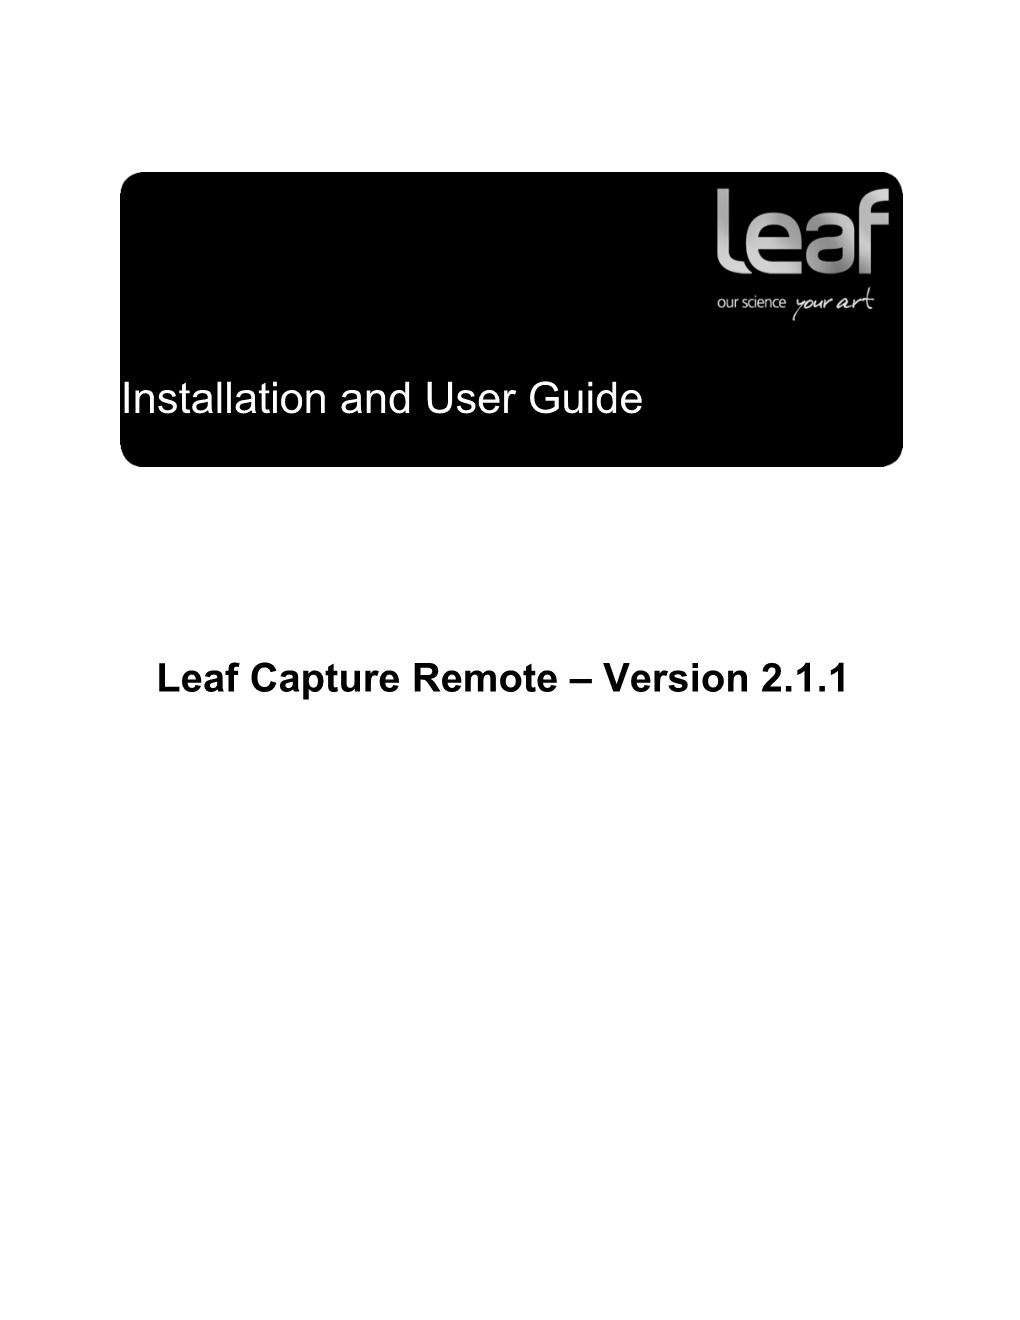 Download the Leaf Capture Remote 2.1.1 Application